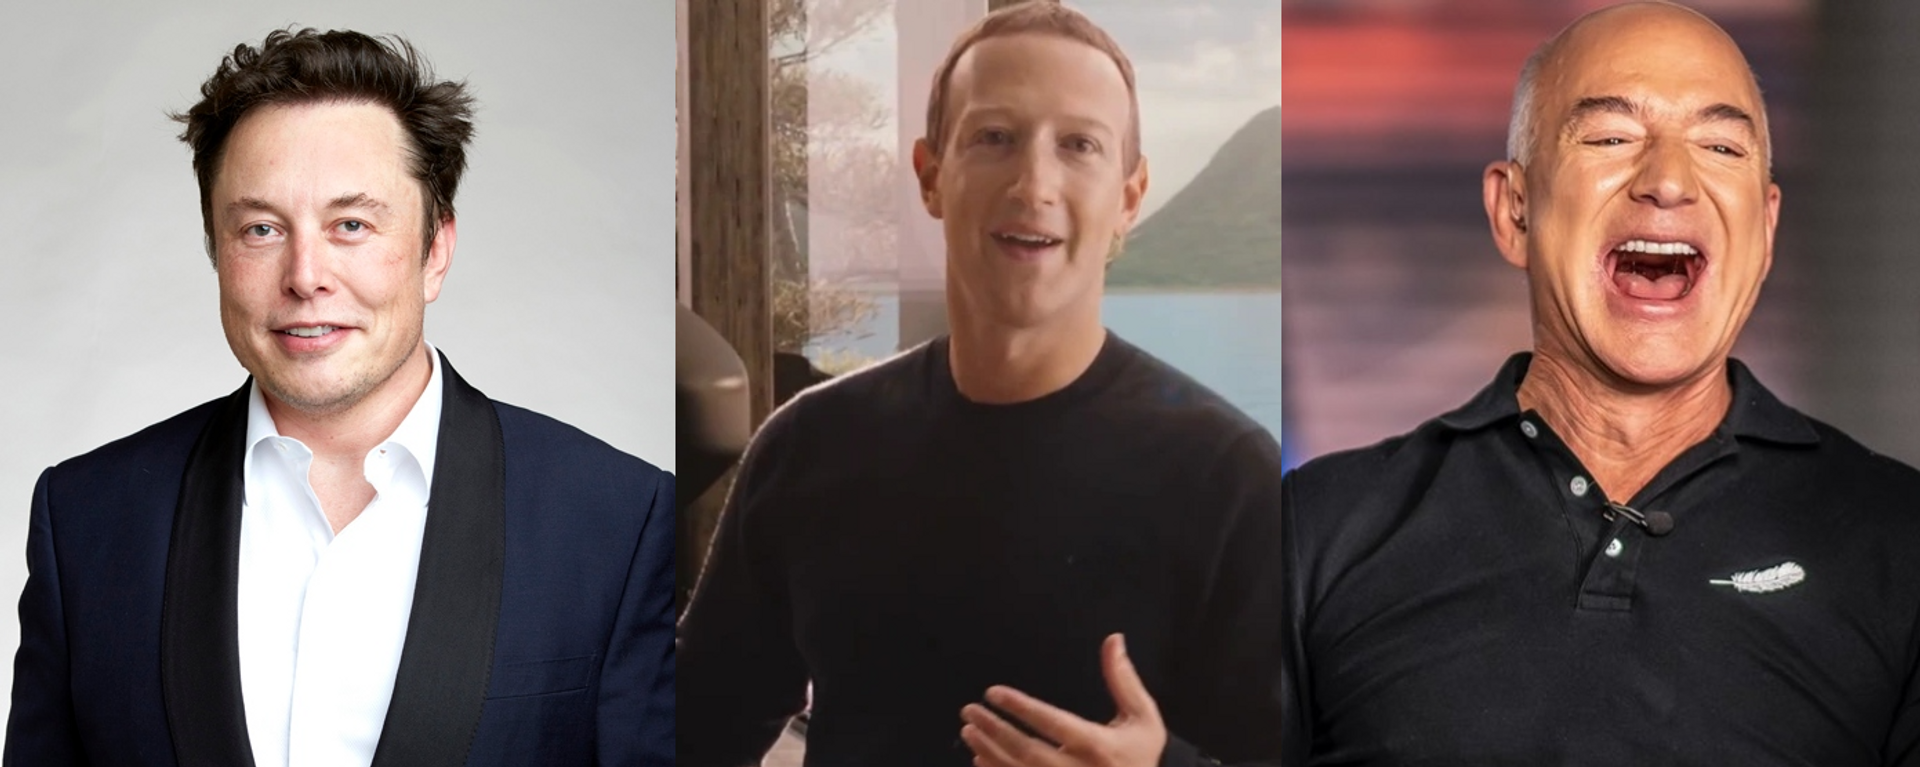 Los multimillonarios Elon Musk, Mark Zuckerberg y Jeff Bezos - Sputnik Mundo, 1920, 01.07.2022